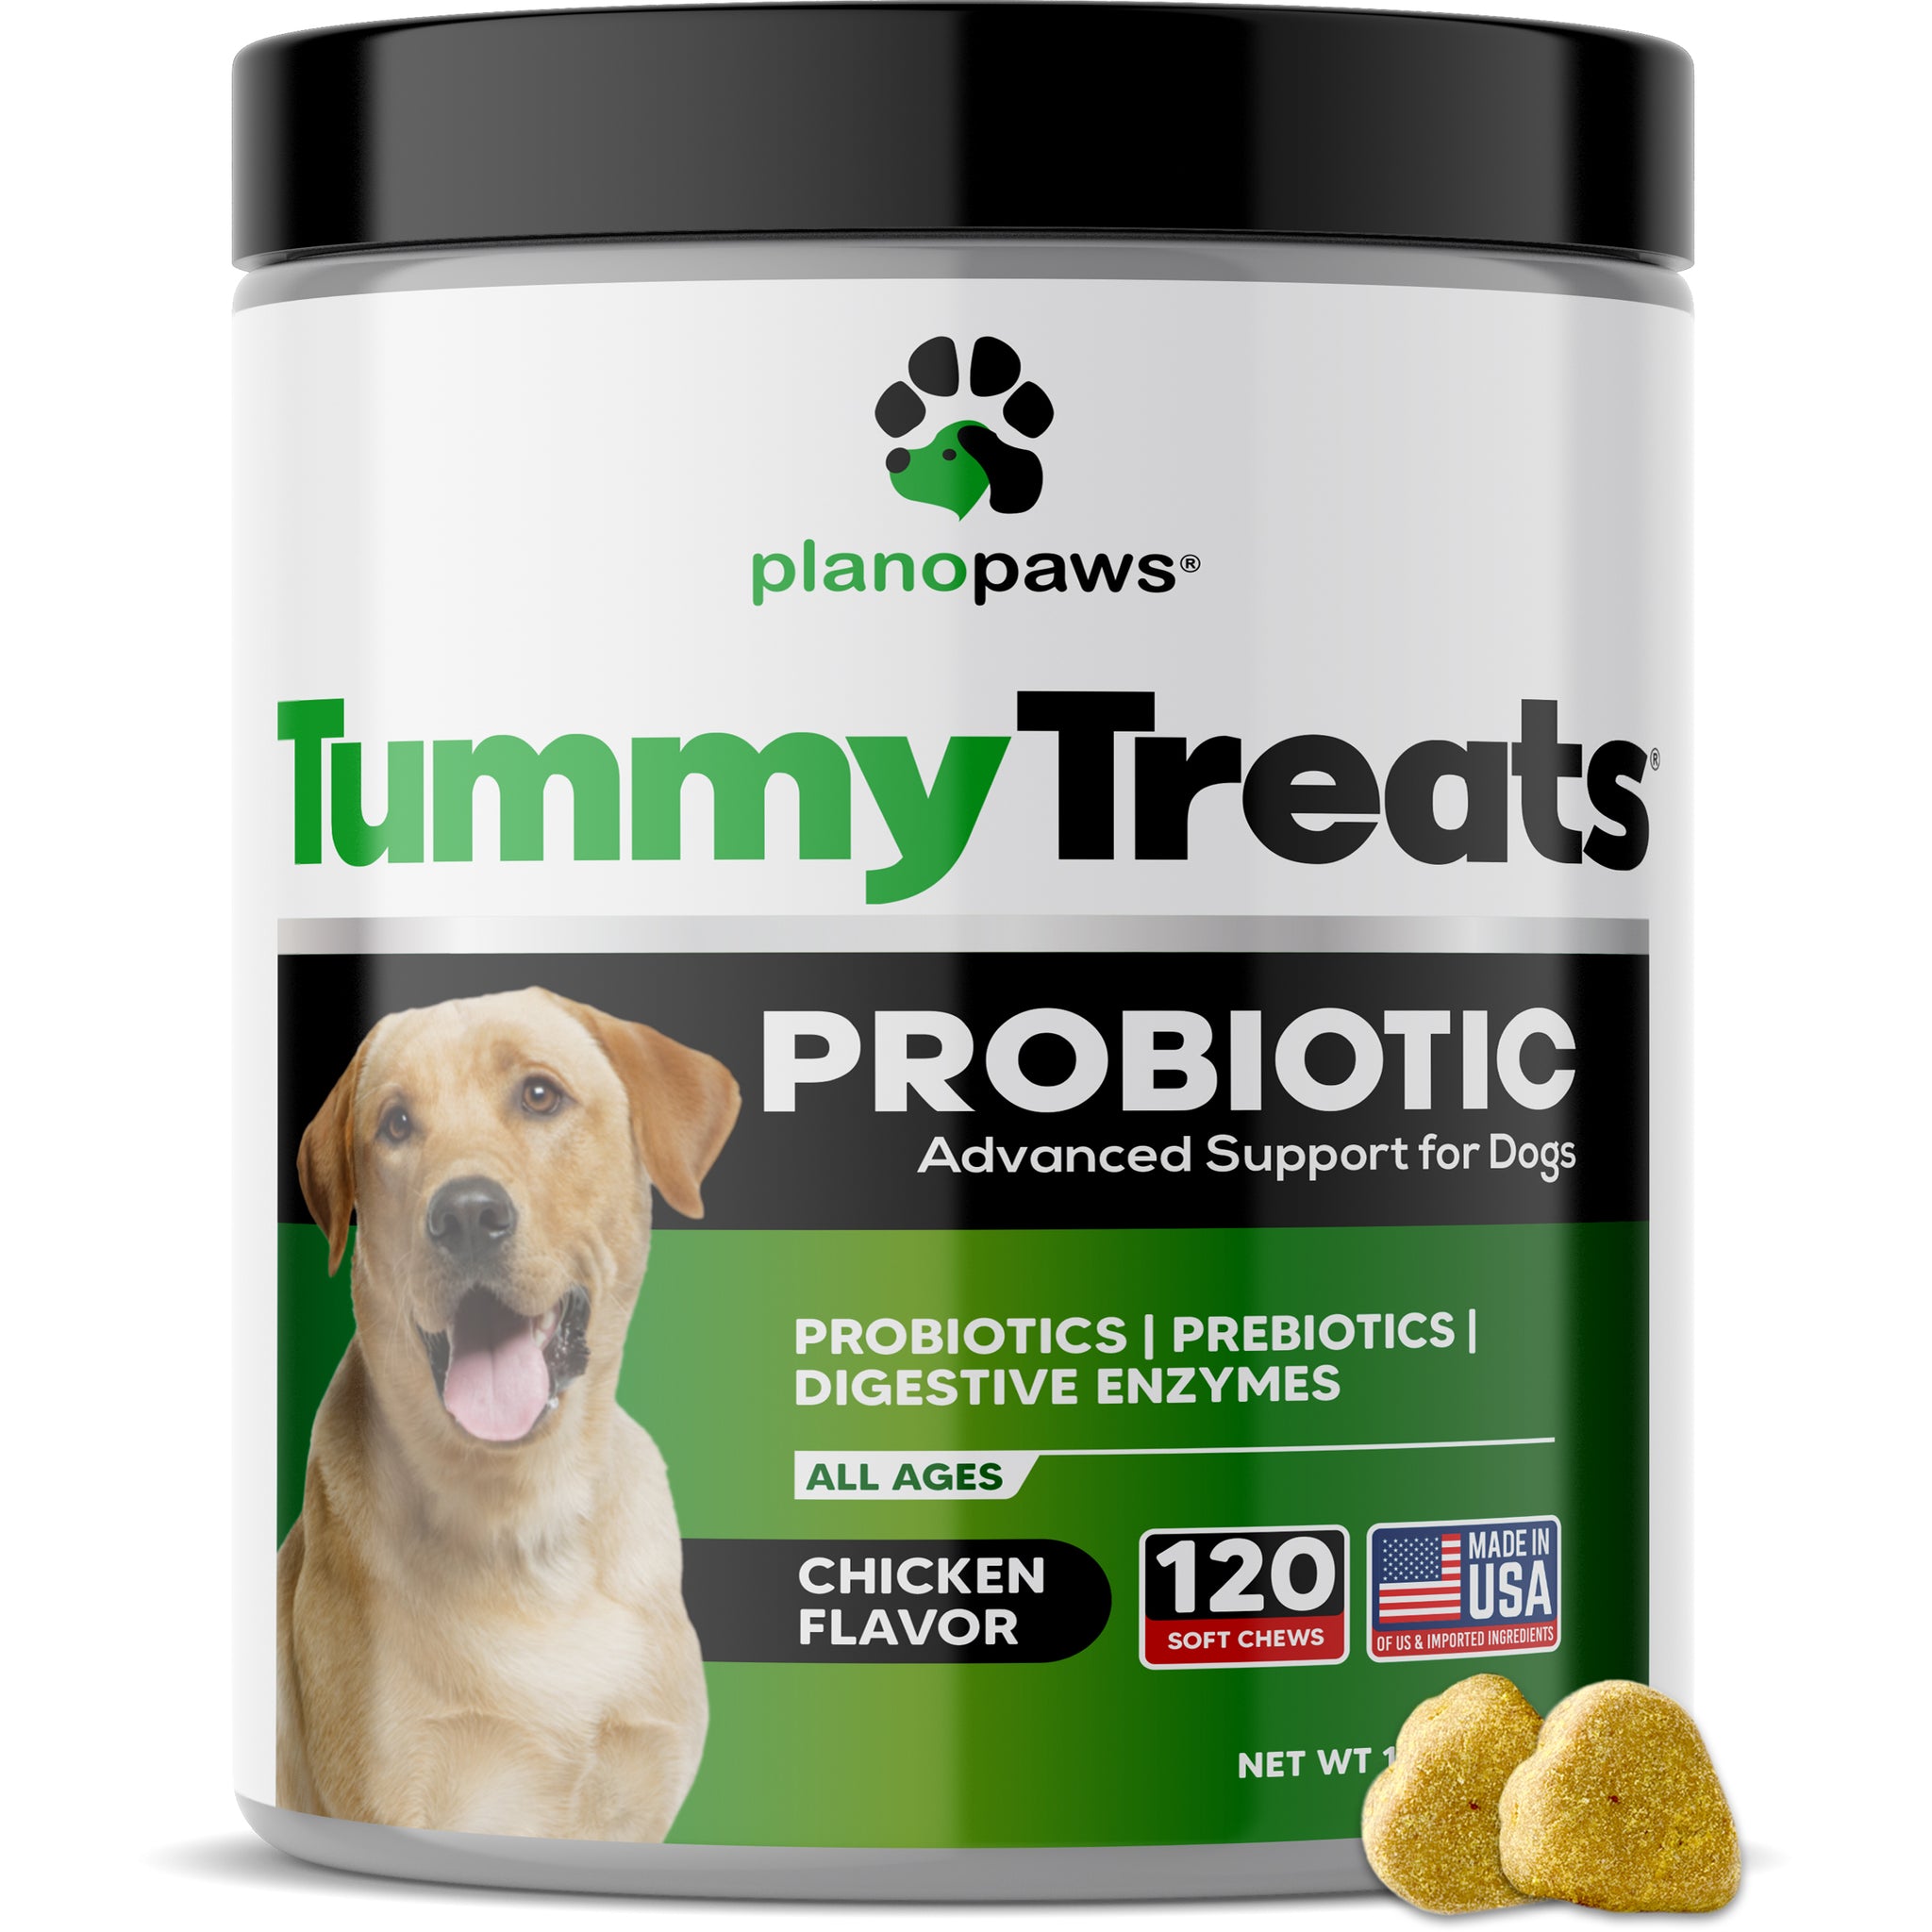 do probiotics make dogs poop more